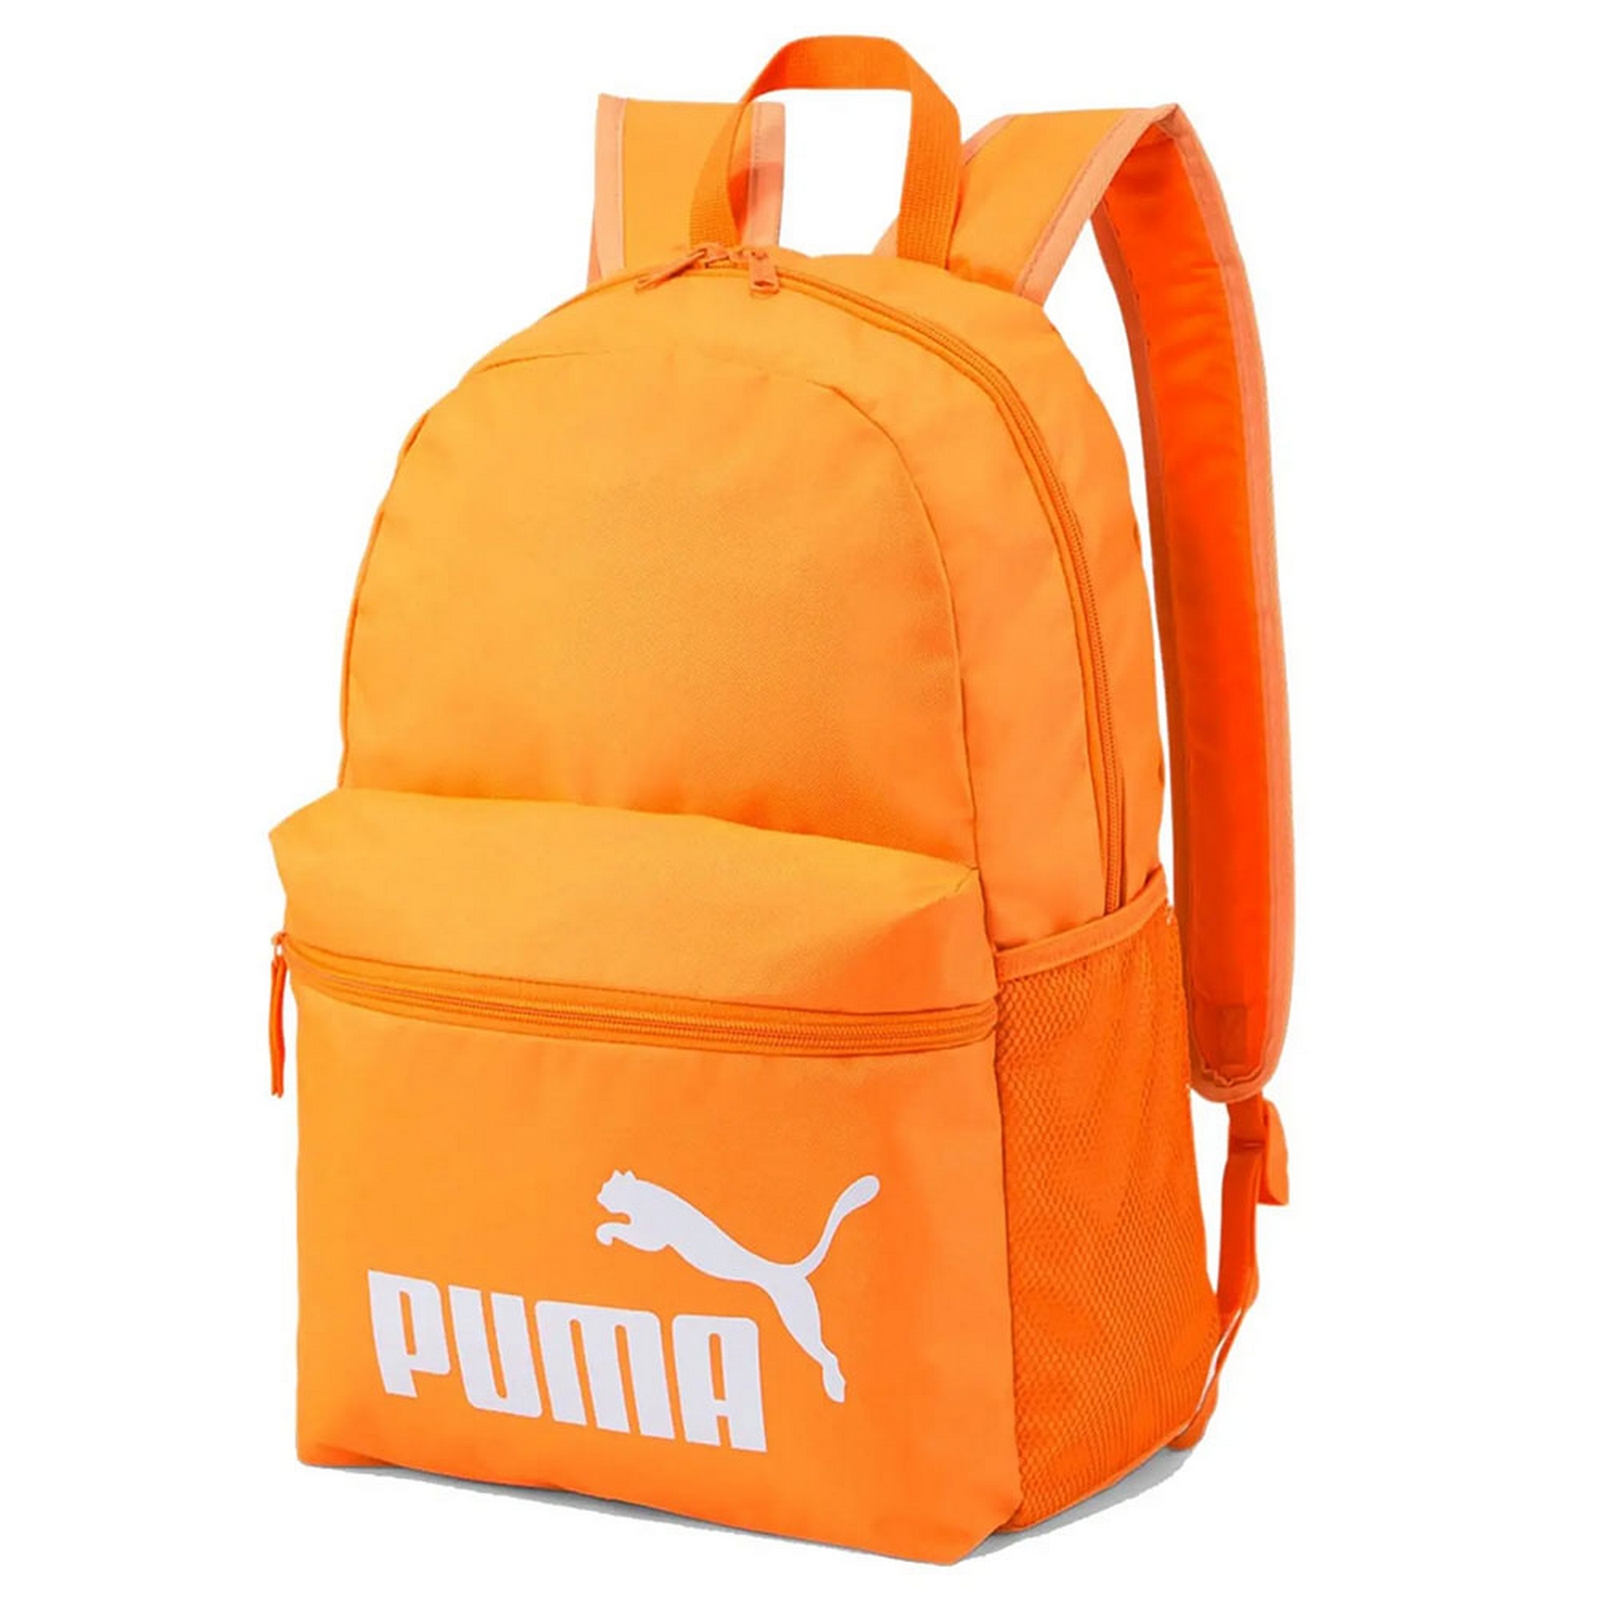    Phase Backpack,  Puma 07548730 -